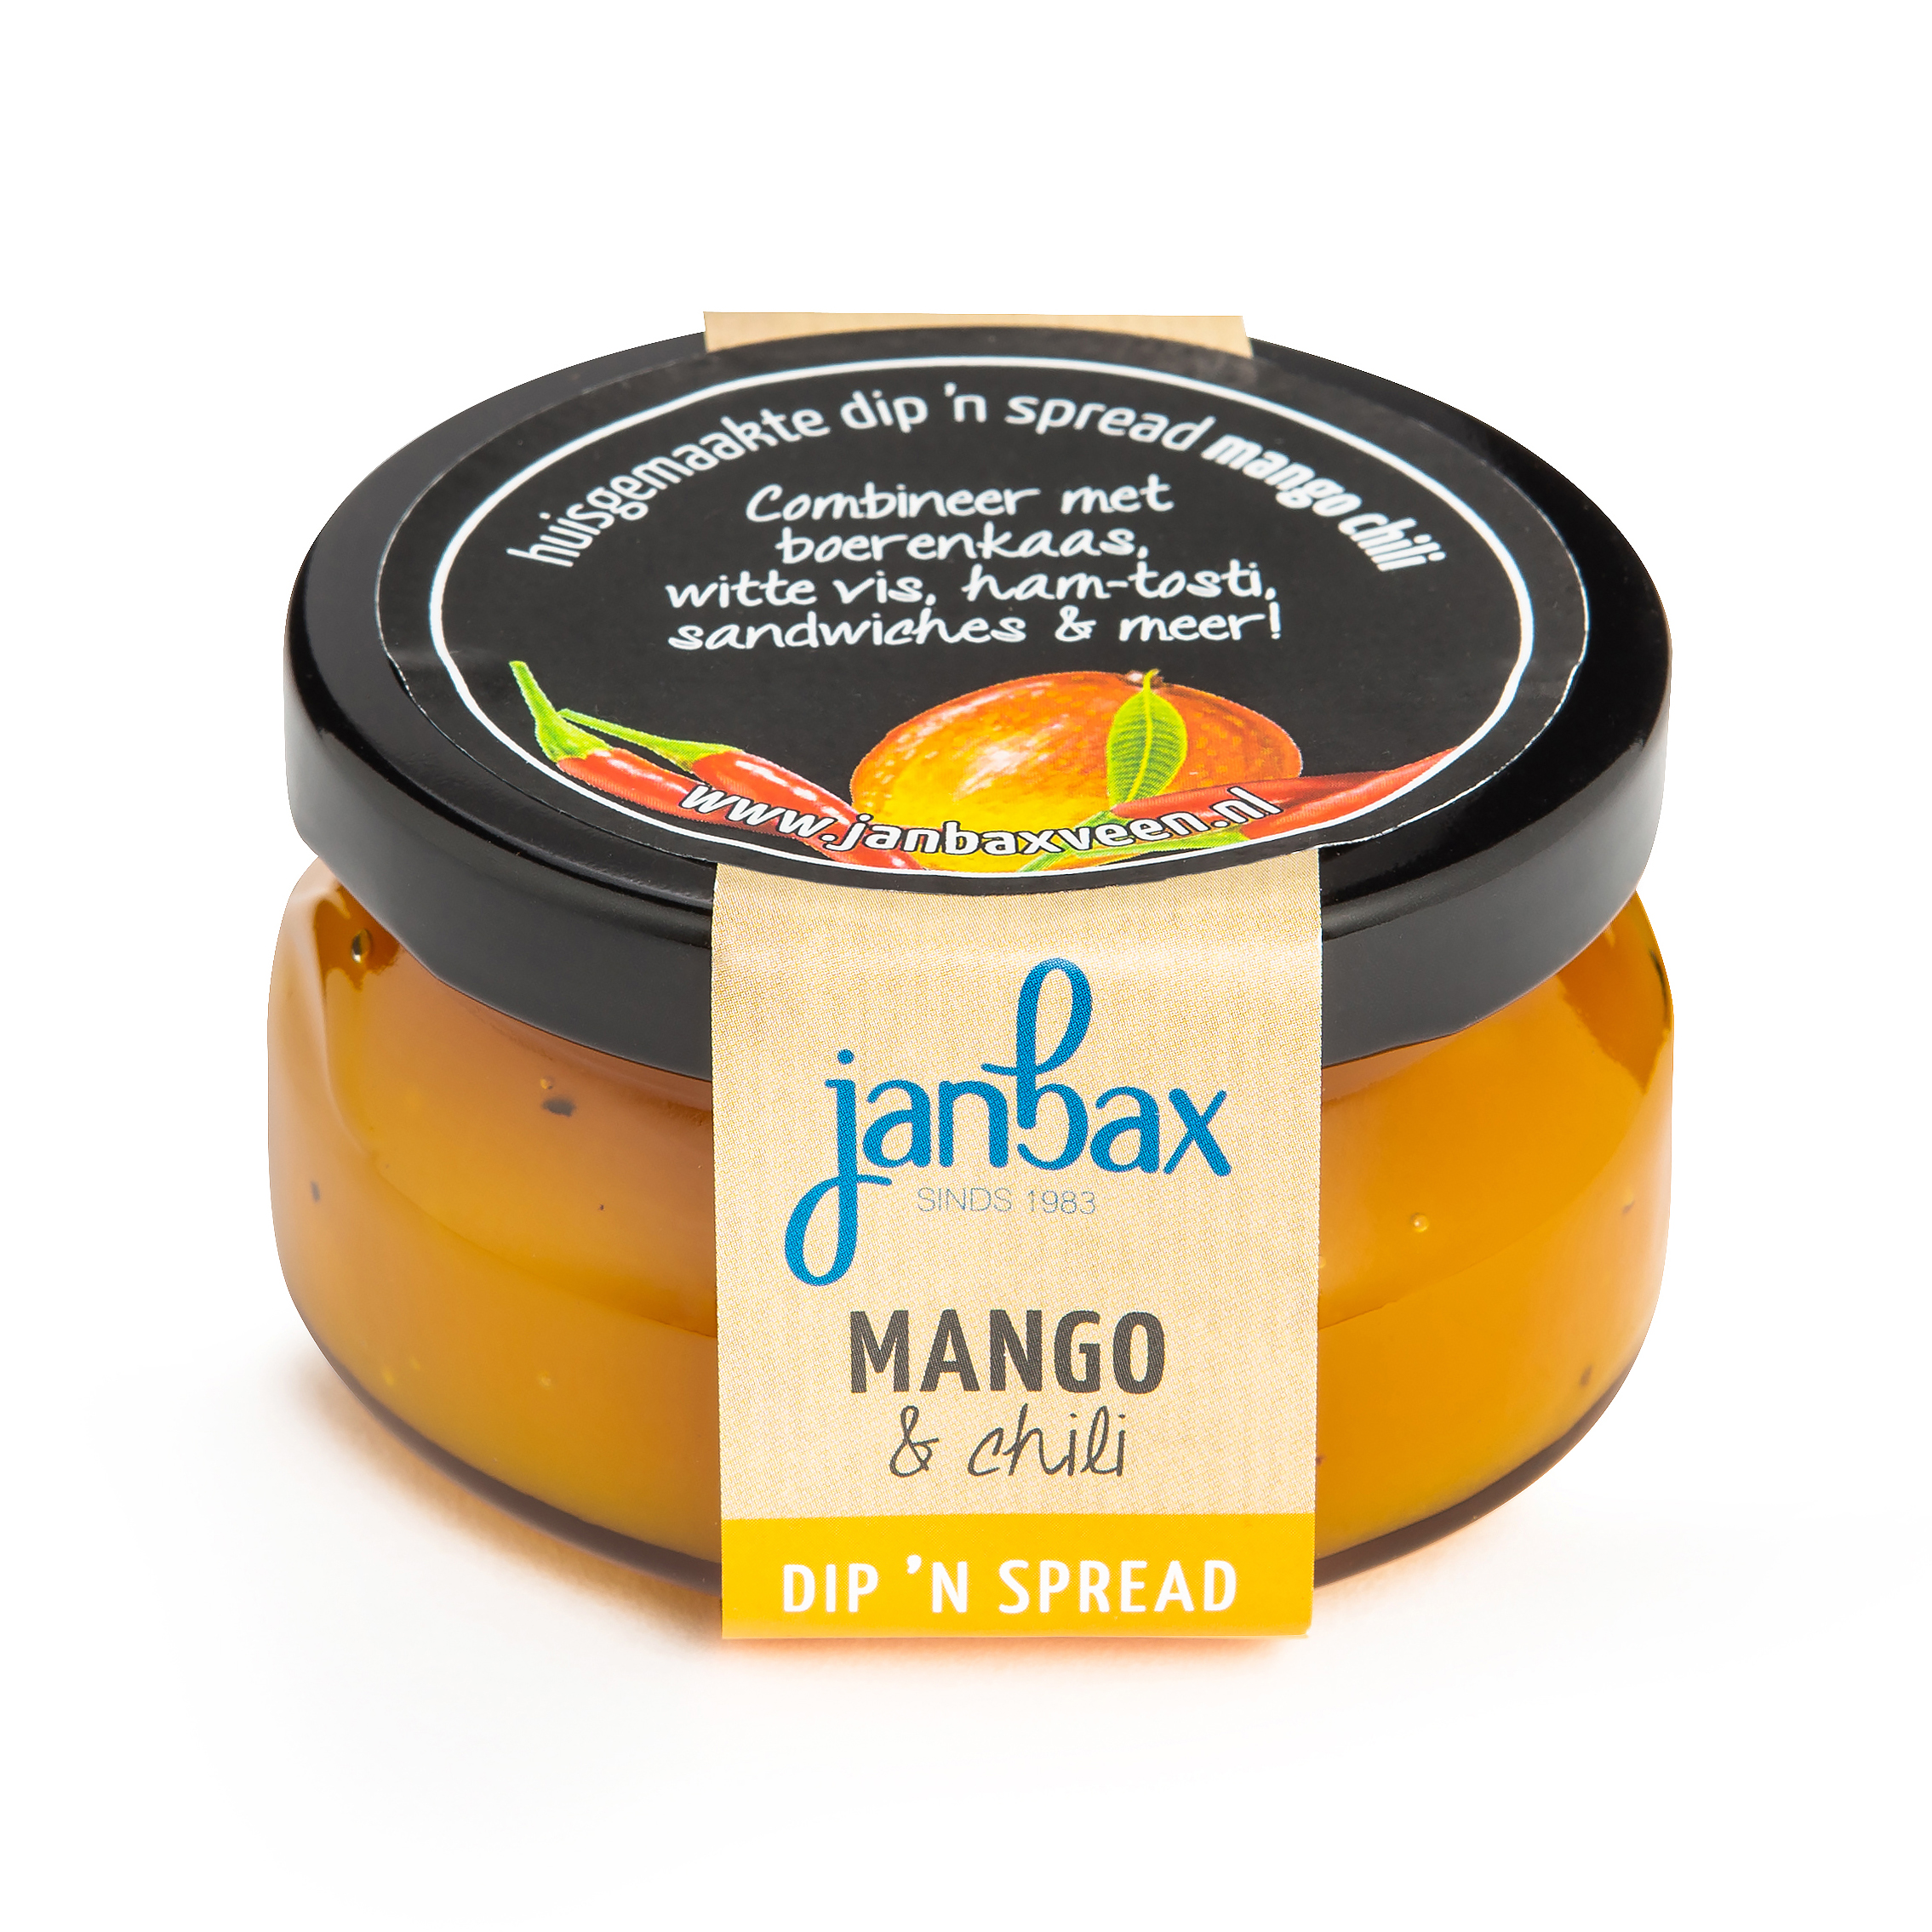 Dip'n spread mango-chili